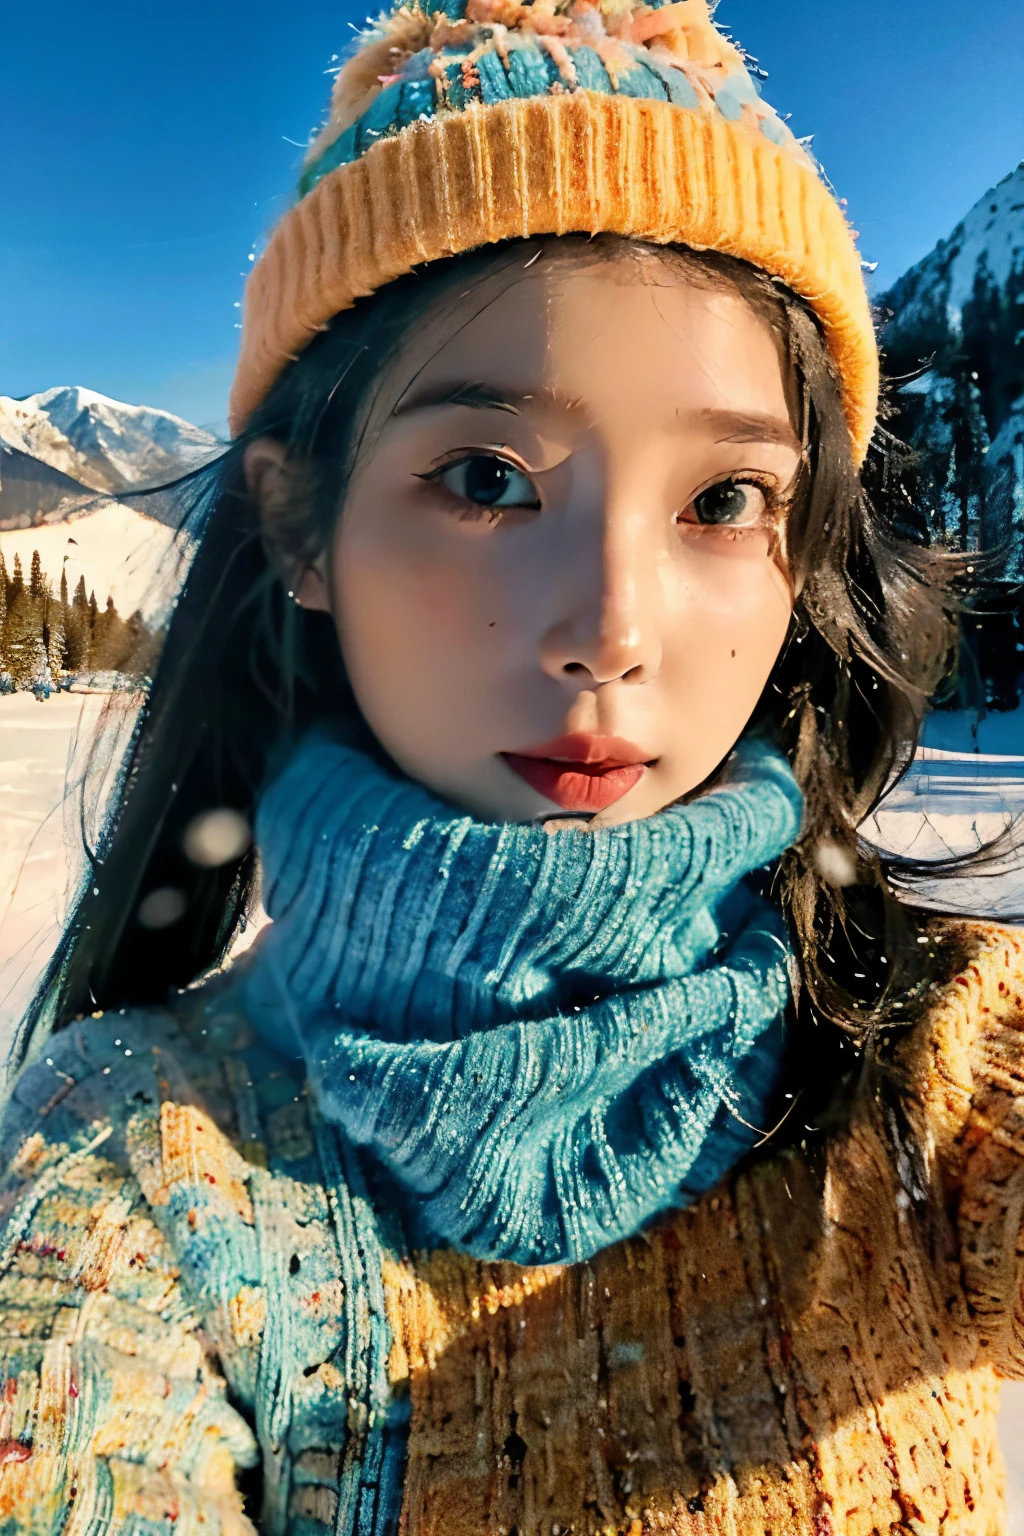 雪の中でニット帽をかぶって自撮りをする若い女性のポートレート, 山岳風景のスタイルで, ライトティールとライトオレンジ, 活気のある, 活気のある, エレガント, 感情的な顔, 旅行, はっきりとした顔立ち, 35mmレンズ, アクセント照明, グローバルイルミネーション